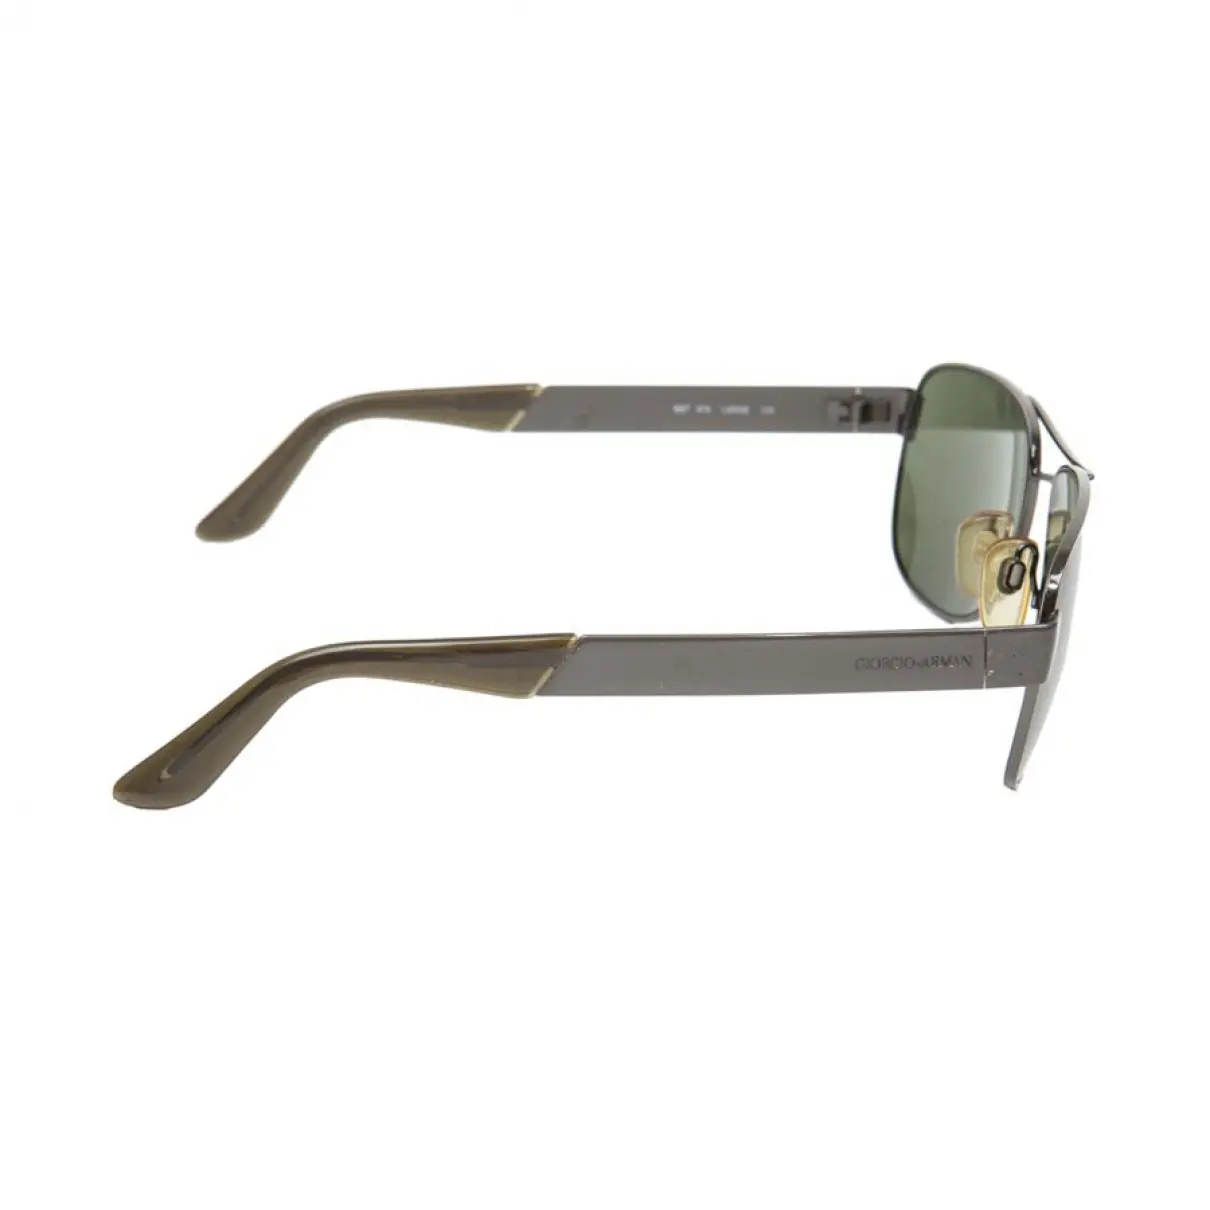 Buy Giorgio Armani Sunglasses online